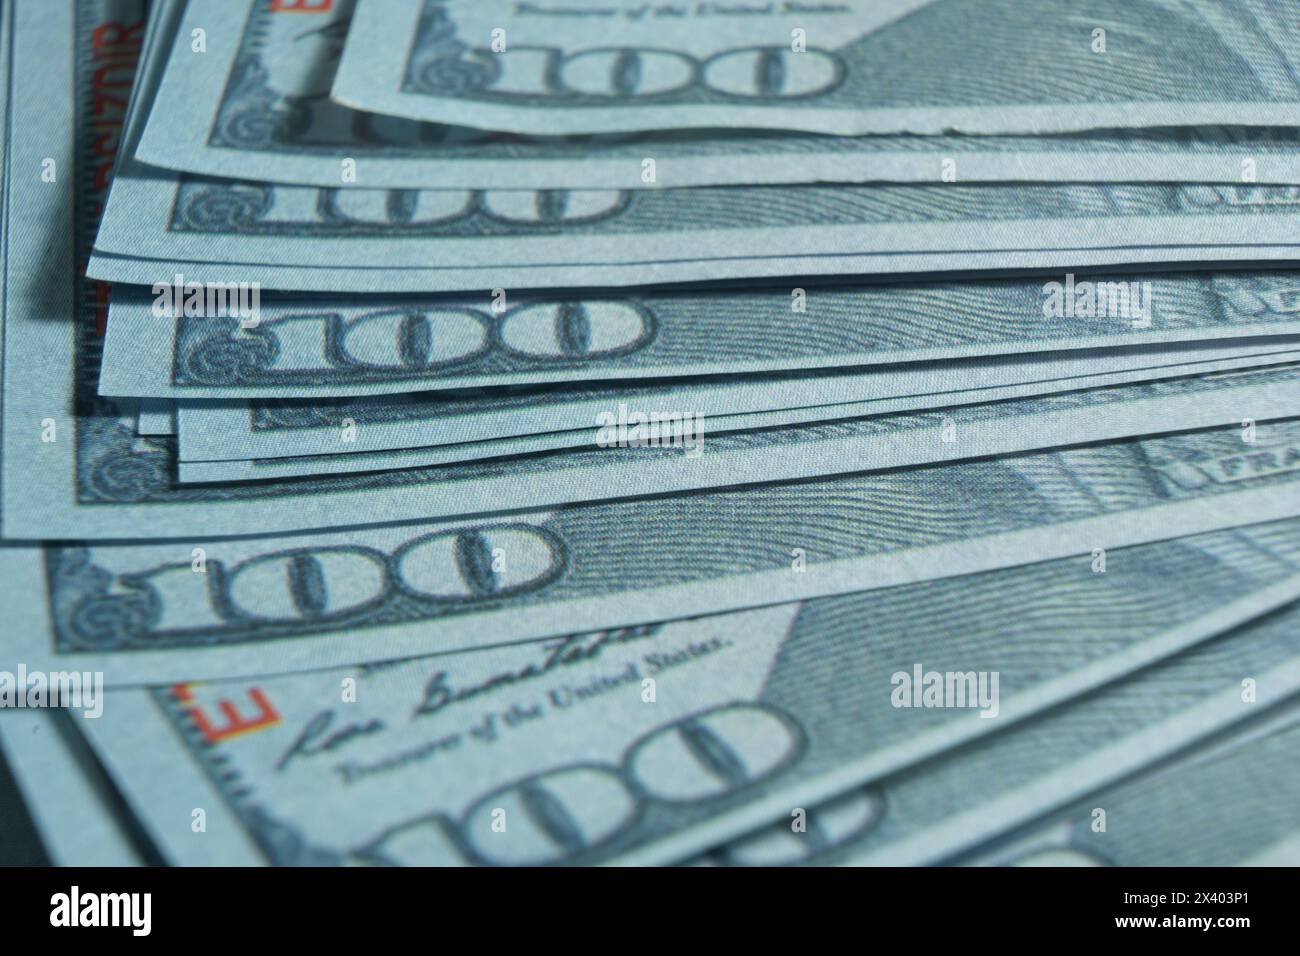 Cento dollari americani primo piano, denaro americano genuino con un valore nominale di cento dollari. Foto Stock